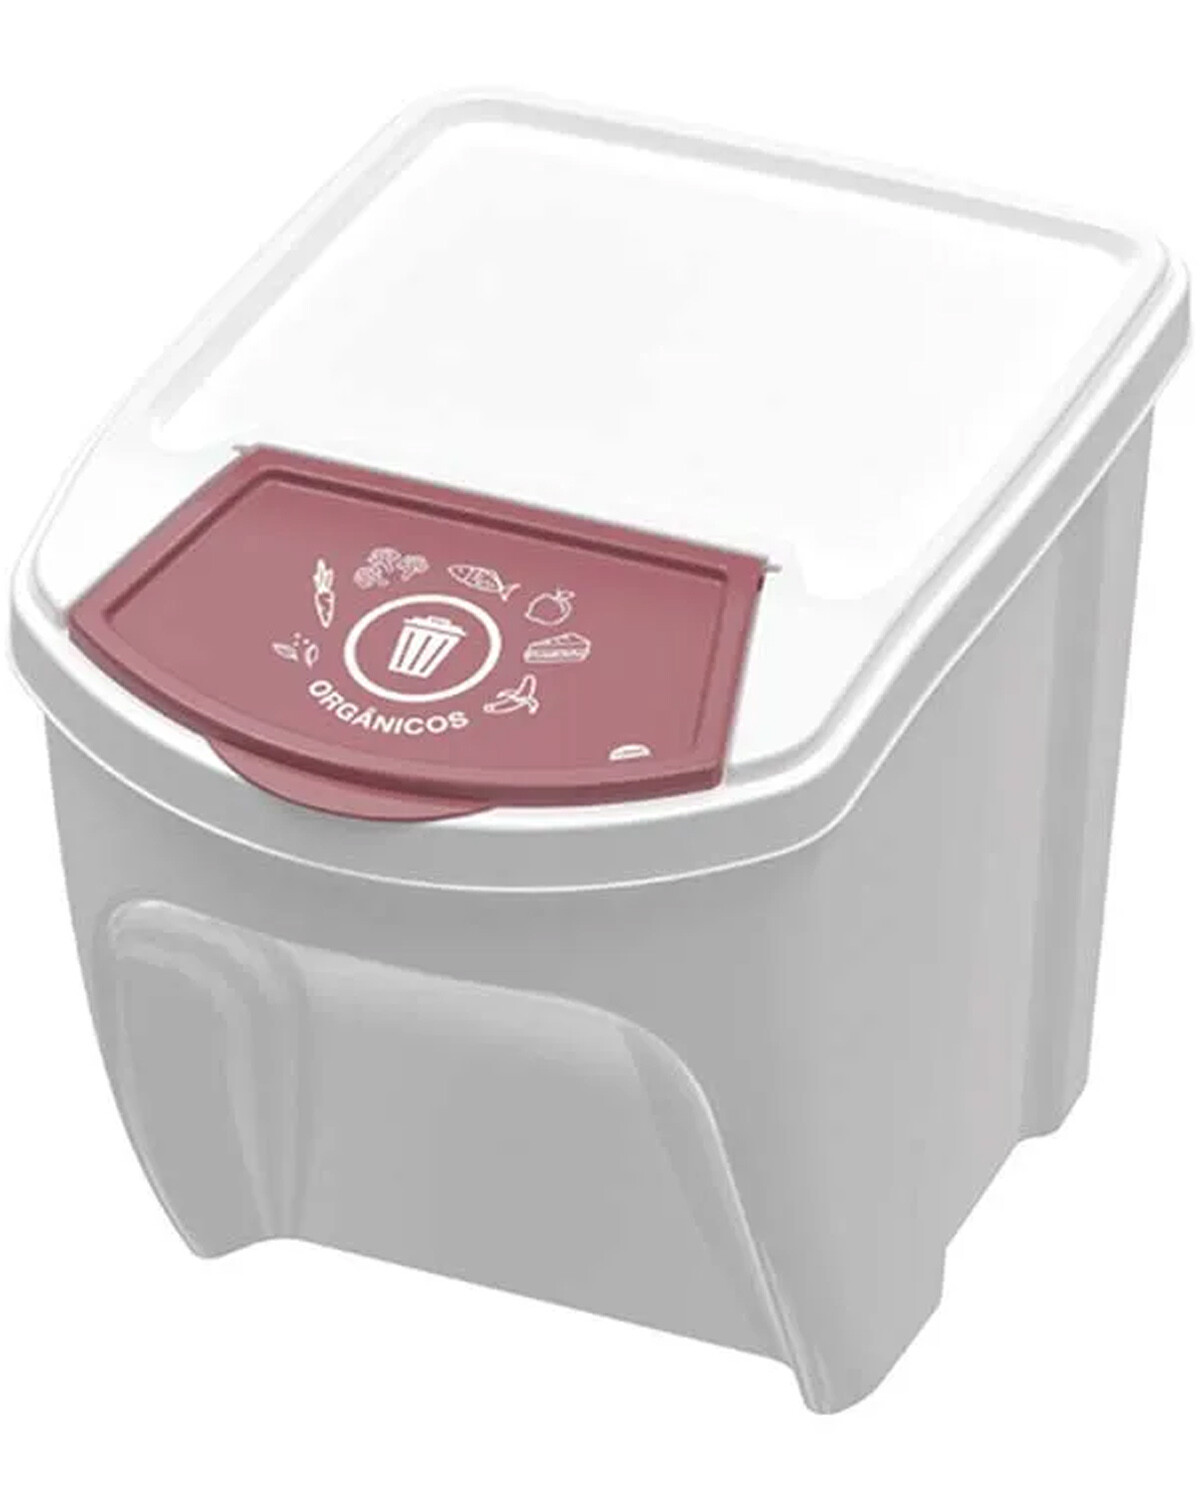 Cubo Residuos Domésticos ECOBOX 25 Litros con Asa Plástica